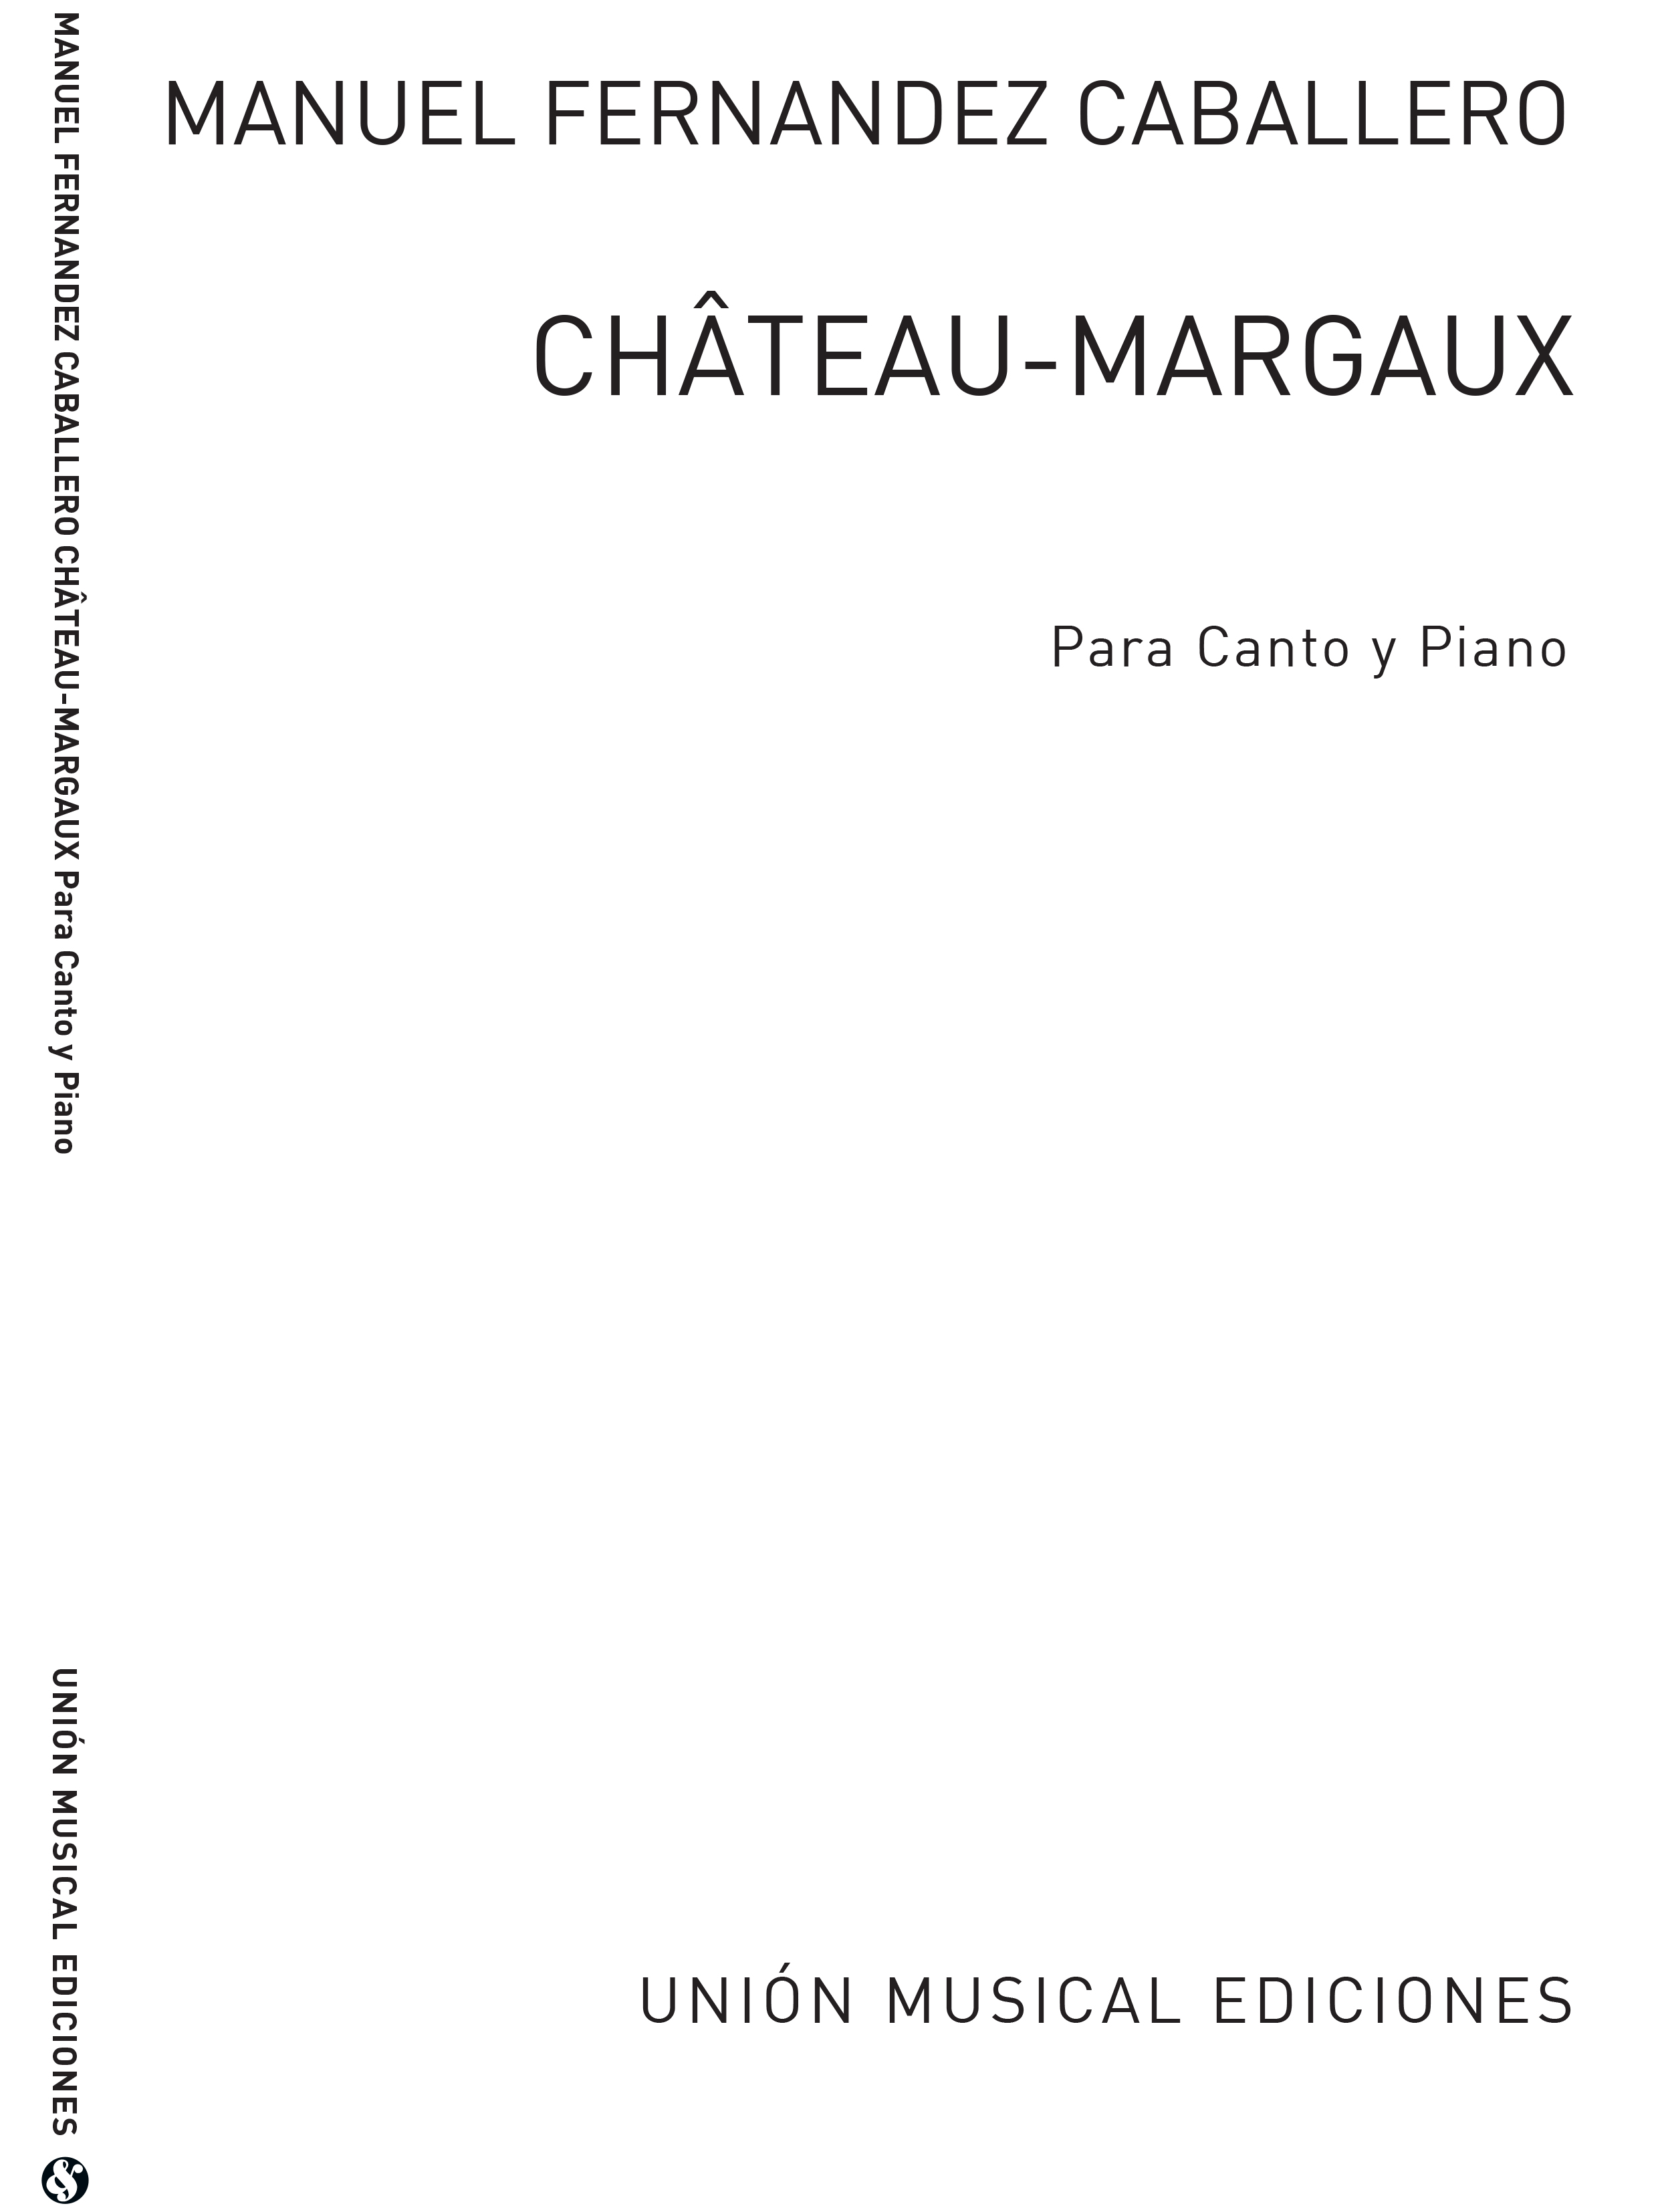 Manuel Fernandez Caballero: Manuel Caballero: Chateau Margaux: Voice: Vocal